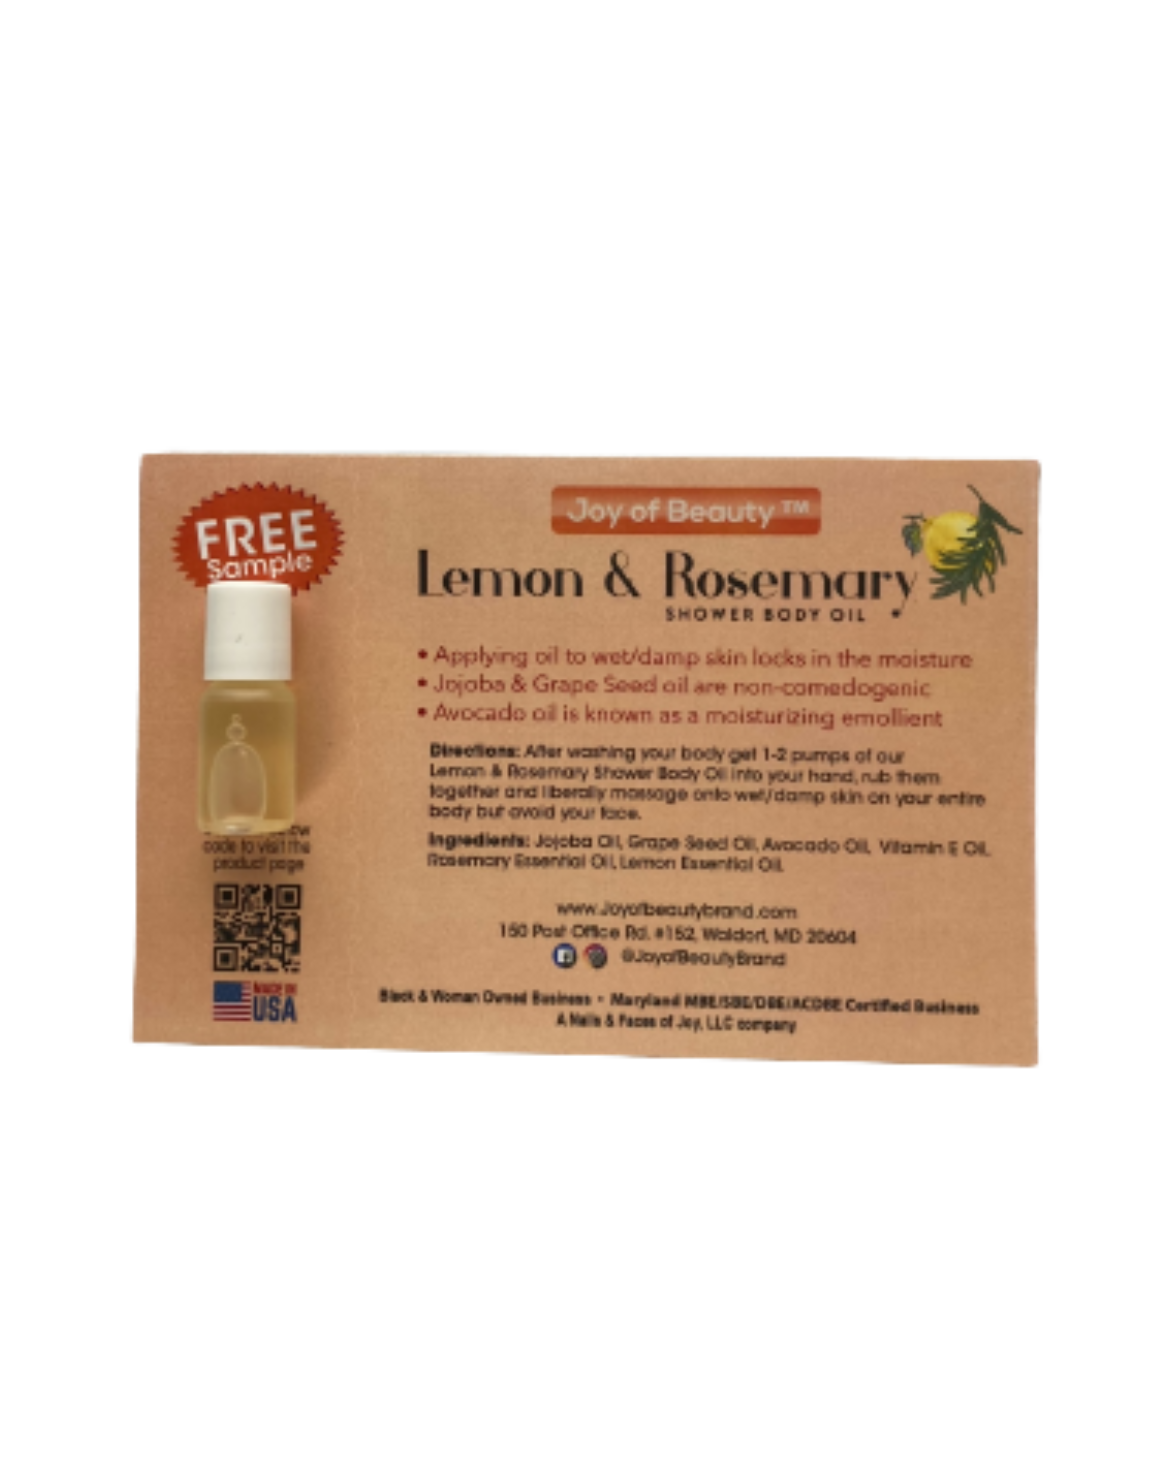 Lemon & Rosemary Shower Body Oil